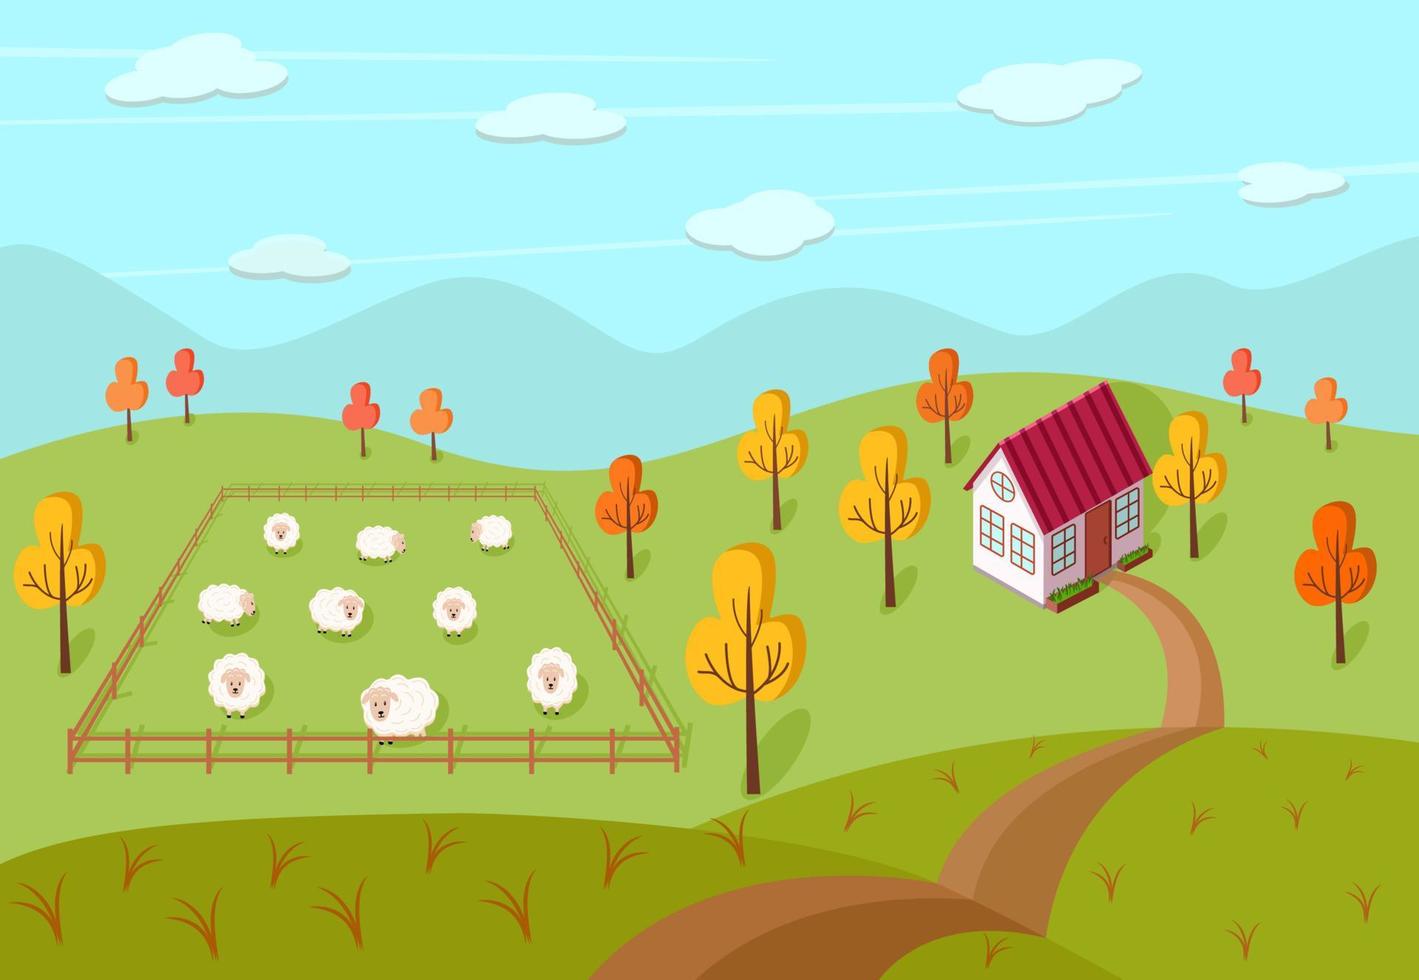 höstlandskap av en gård, ett hus och en hage med får. vektor illustration av en by